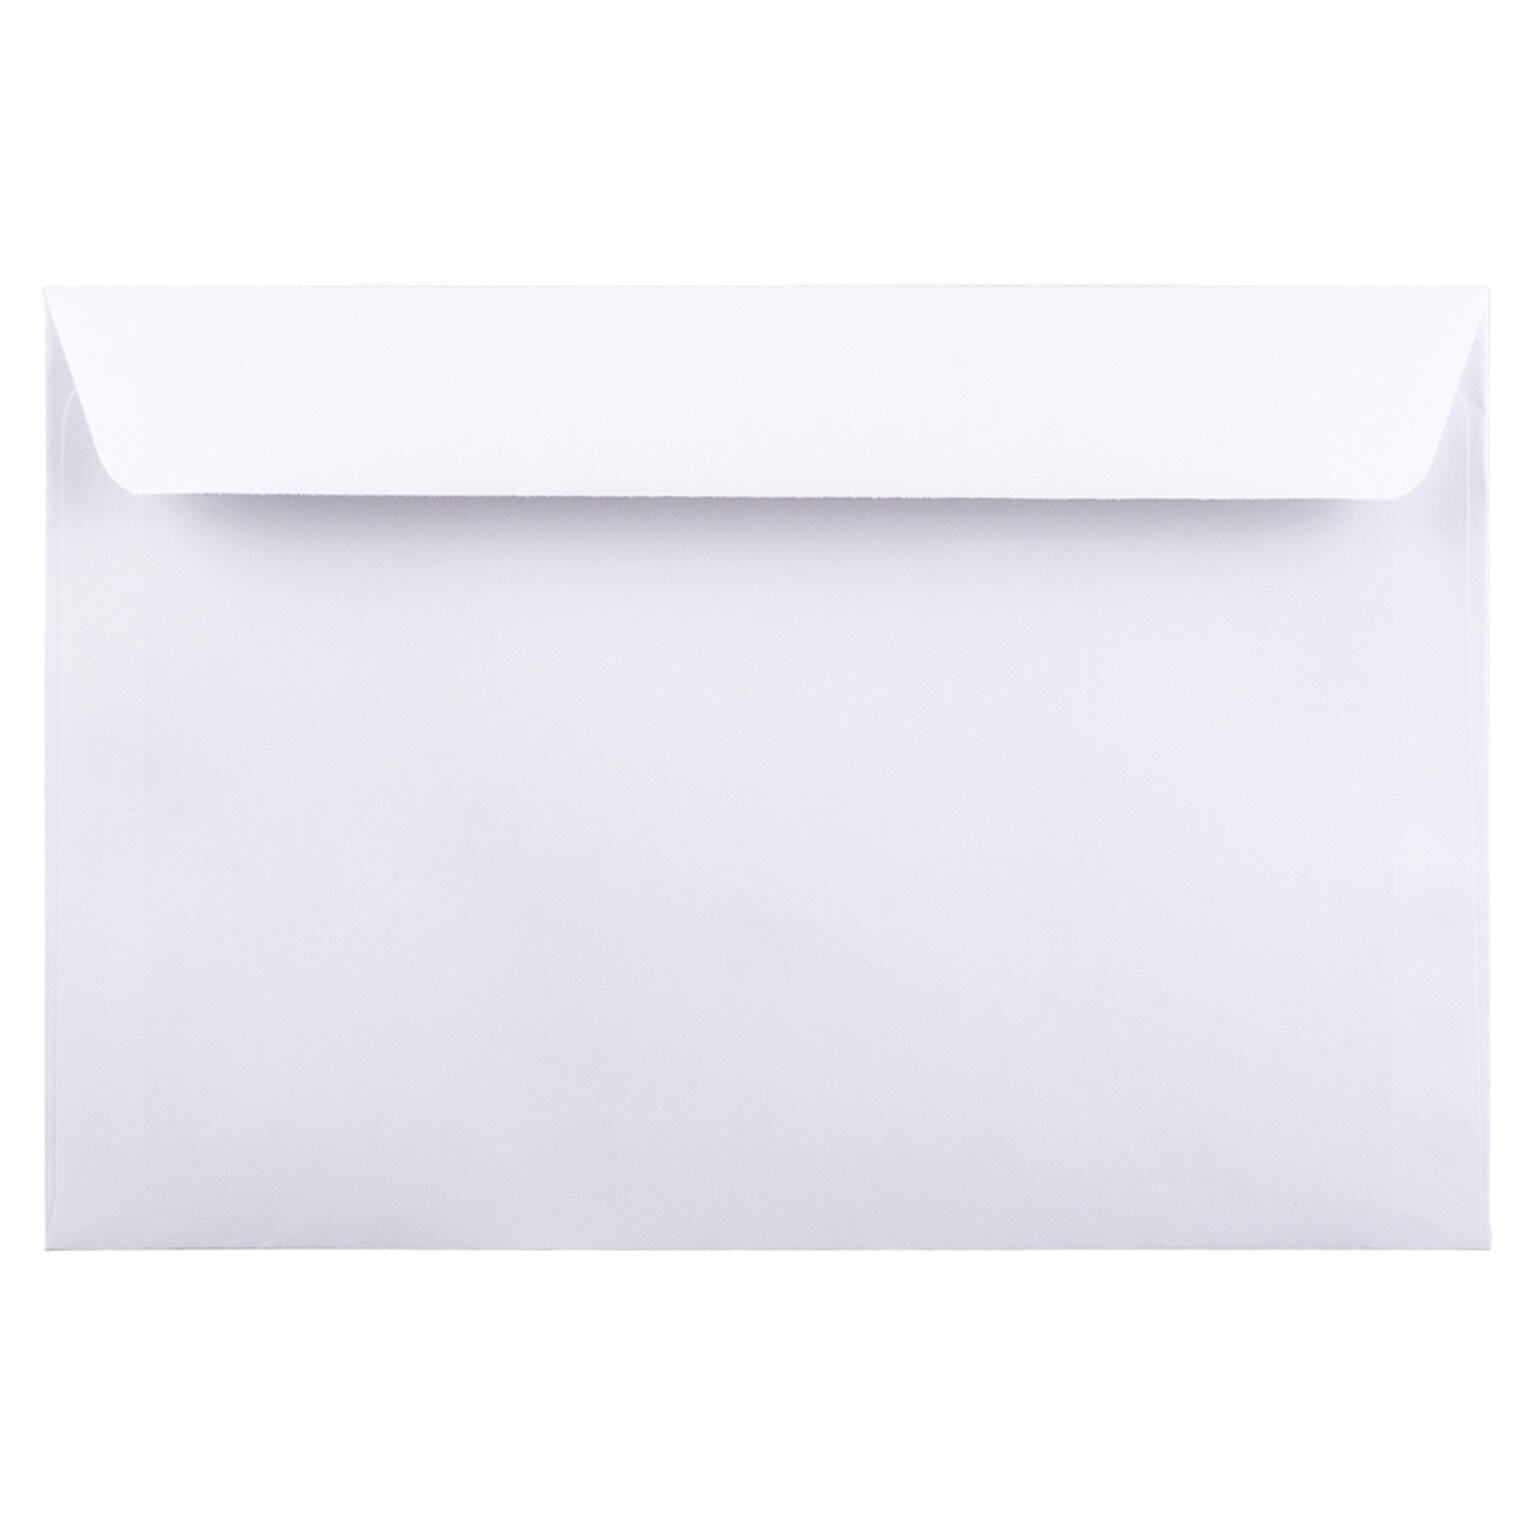 JAM Paper 6 x 9 Booklet Commercial Envelopes, White, Bulk 500/Box (4238c)